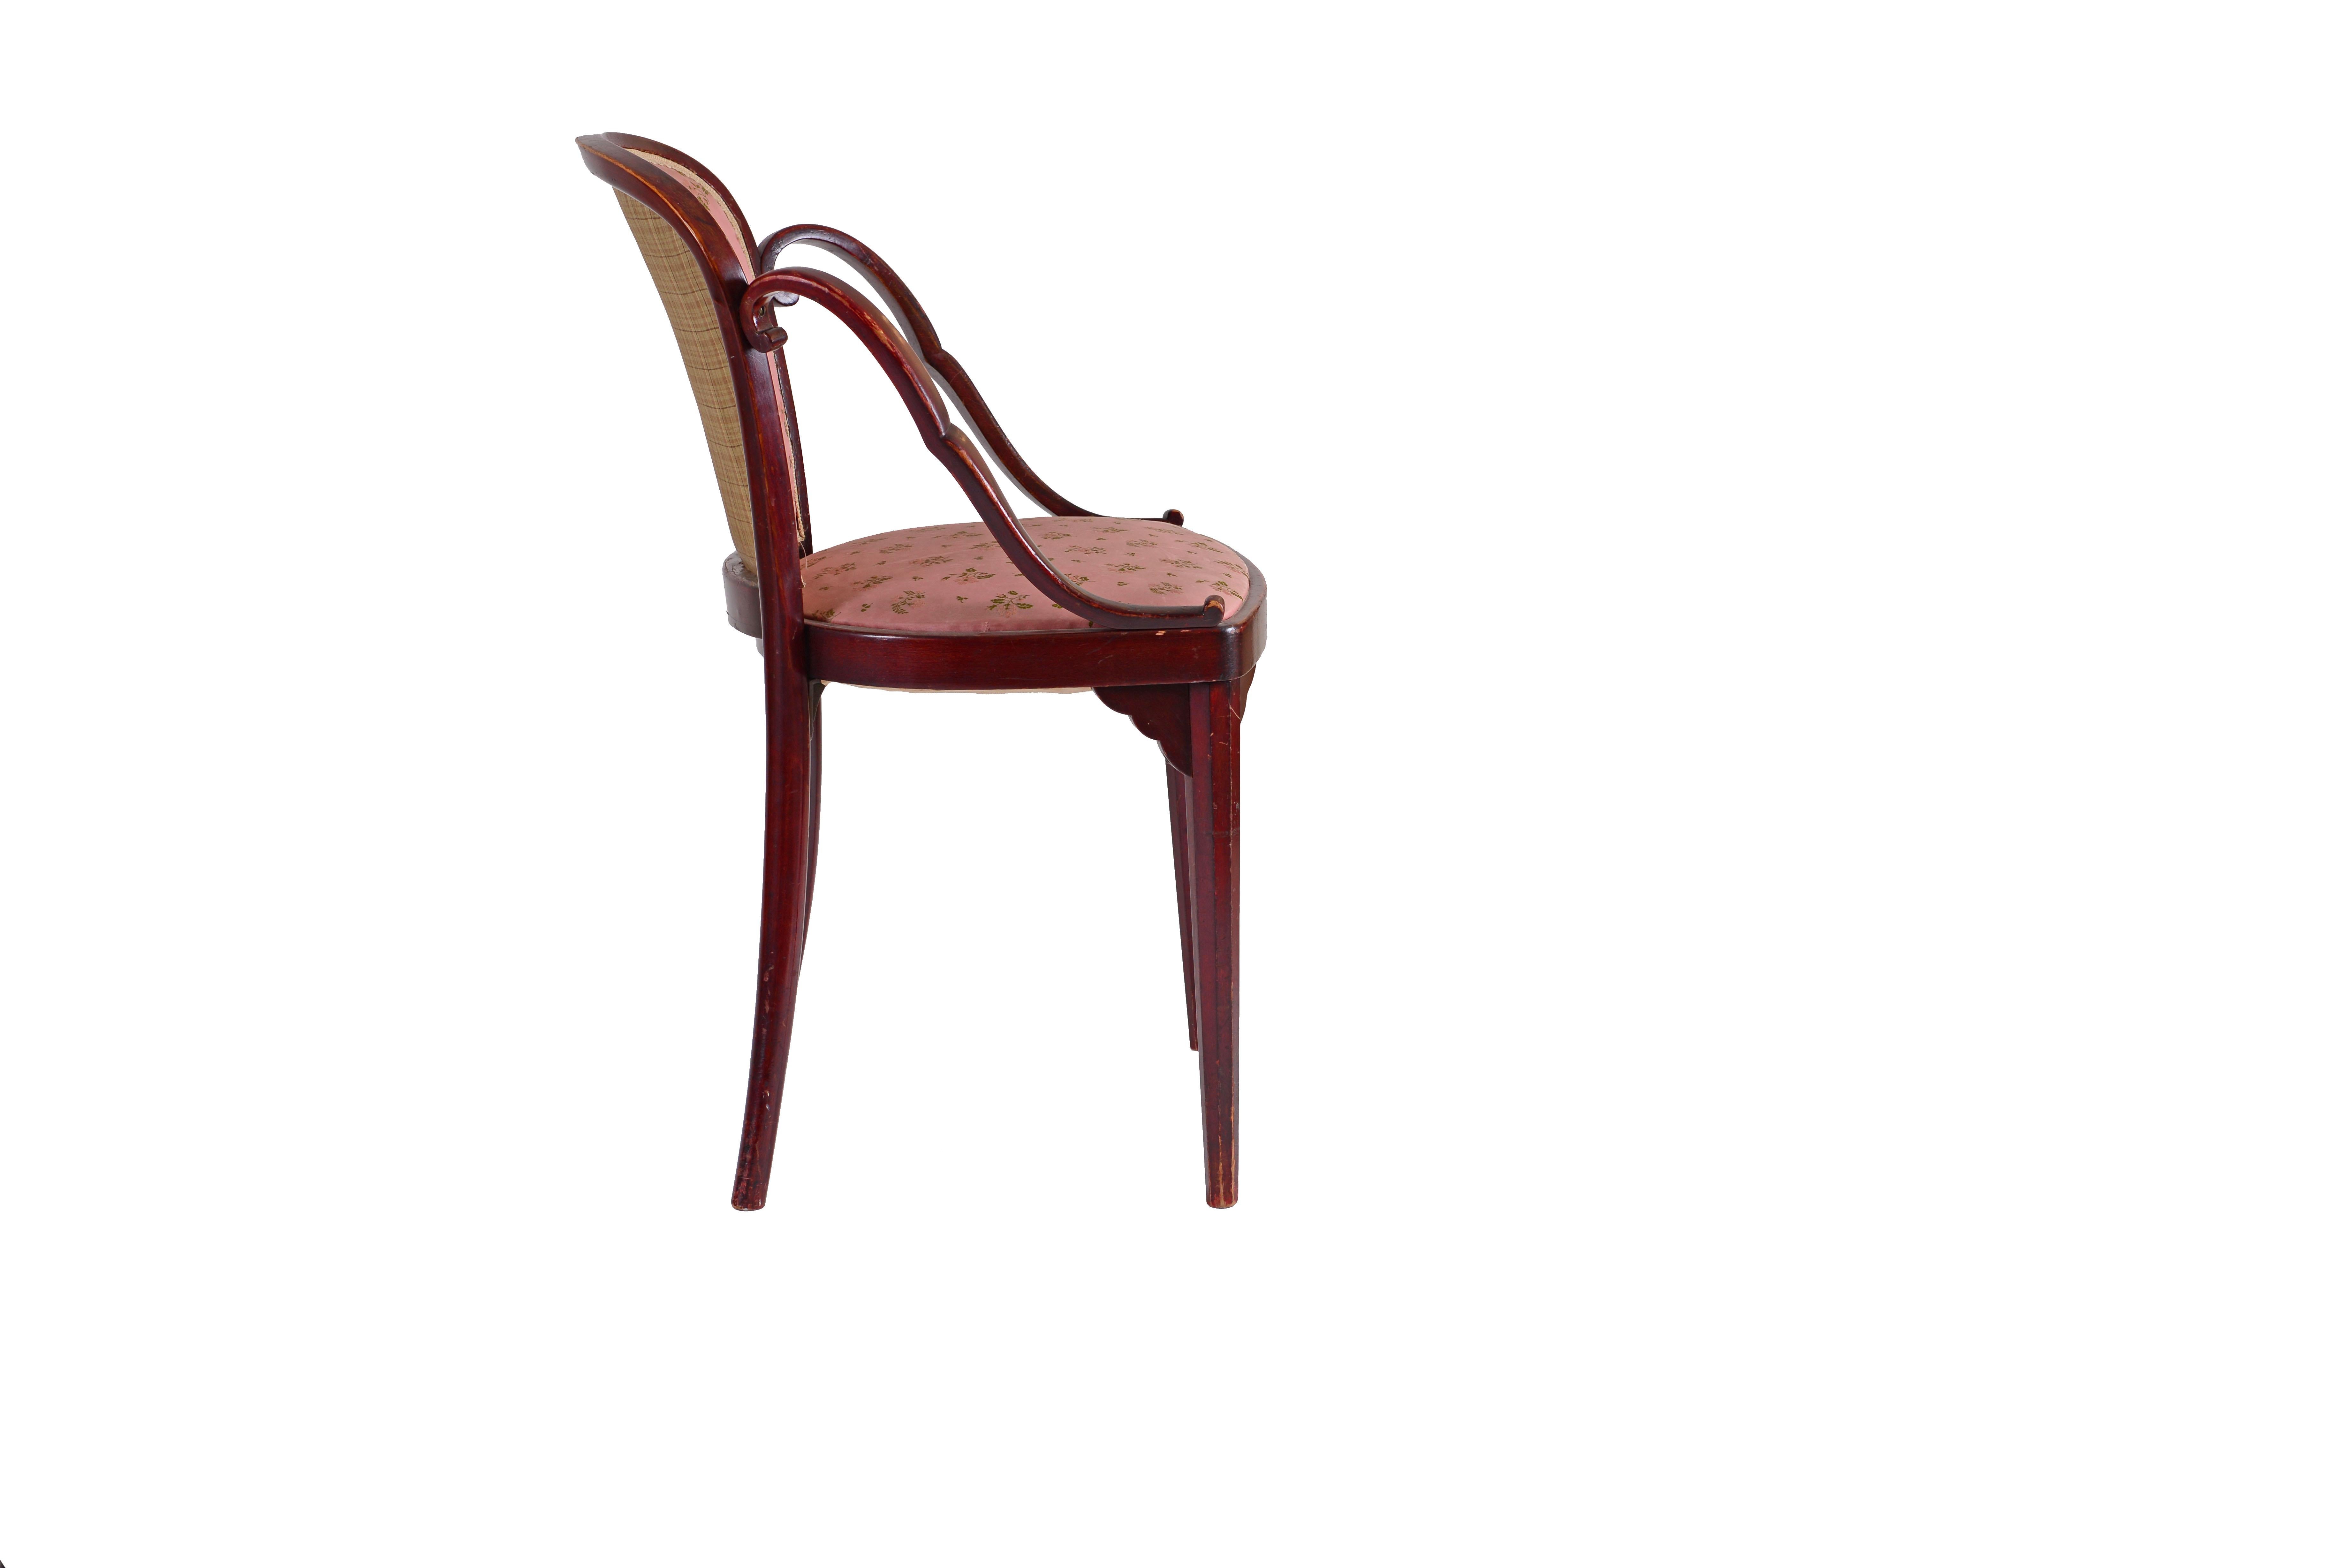 Une chaise très rare et non documentée de Josef Hoffmann et J&J Kohn. Une chaise identique avec un revêtement en cuir est également disponible.